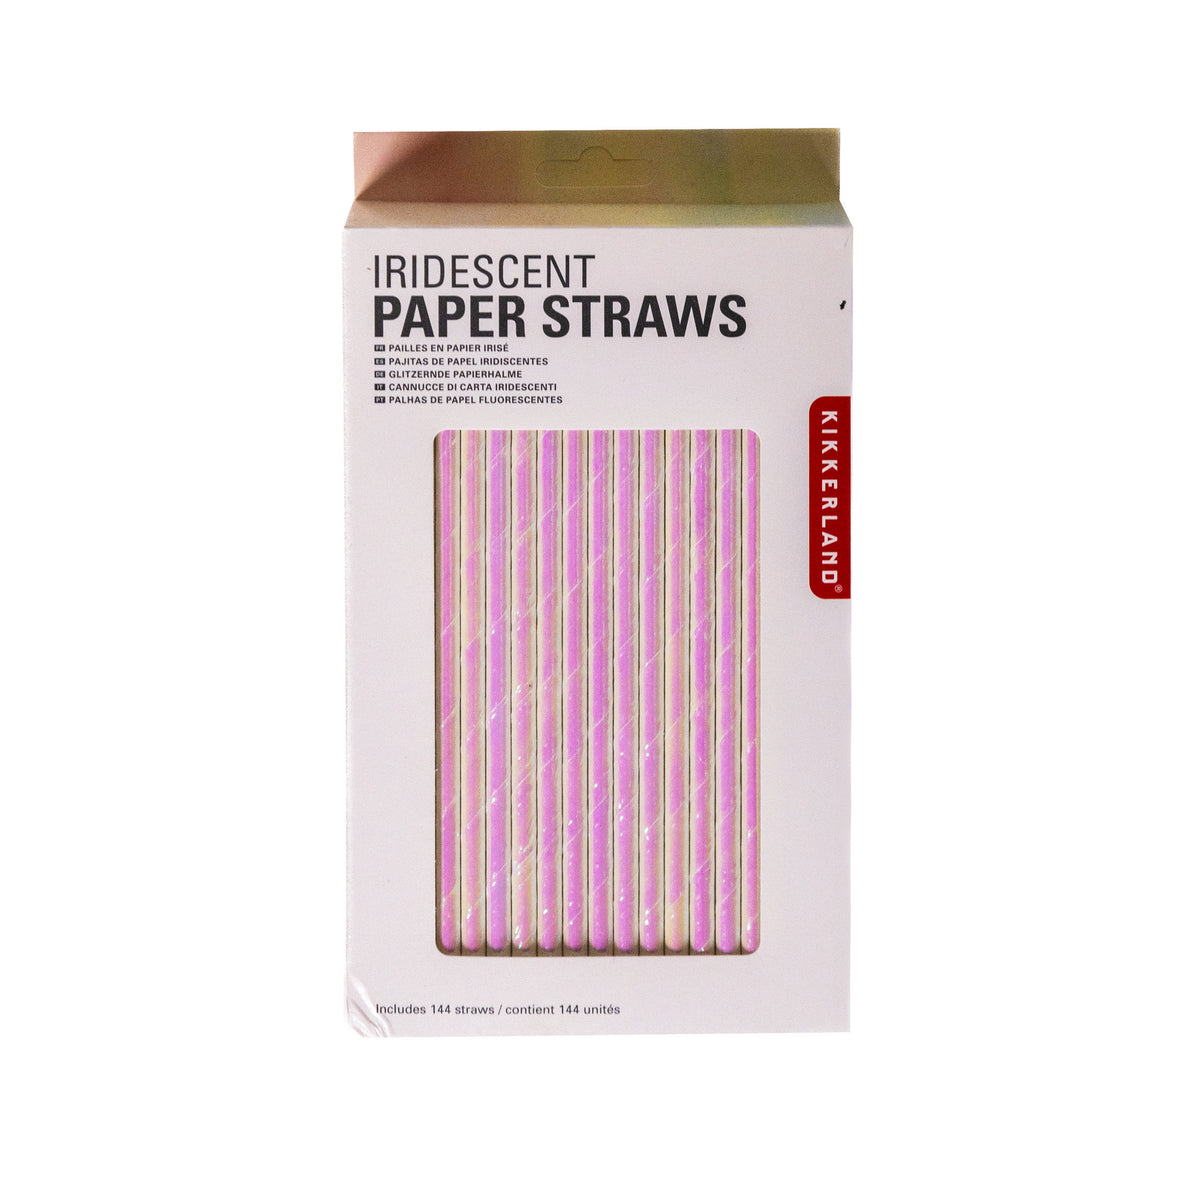 Reusable Plastic Straws – World Chess Hall of Fame